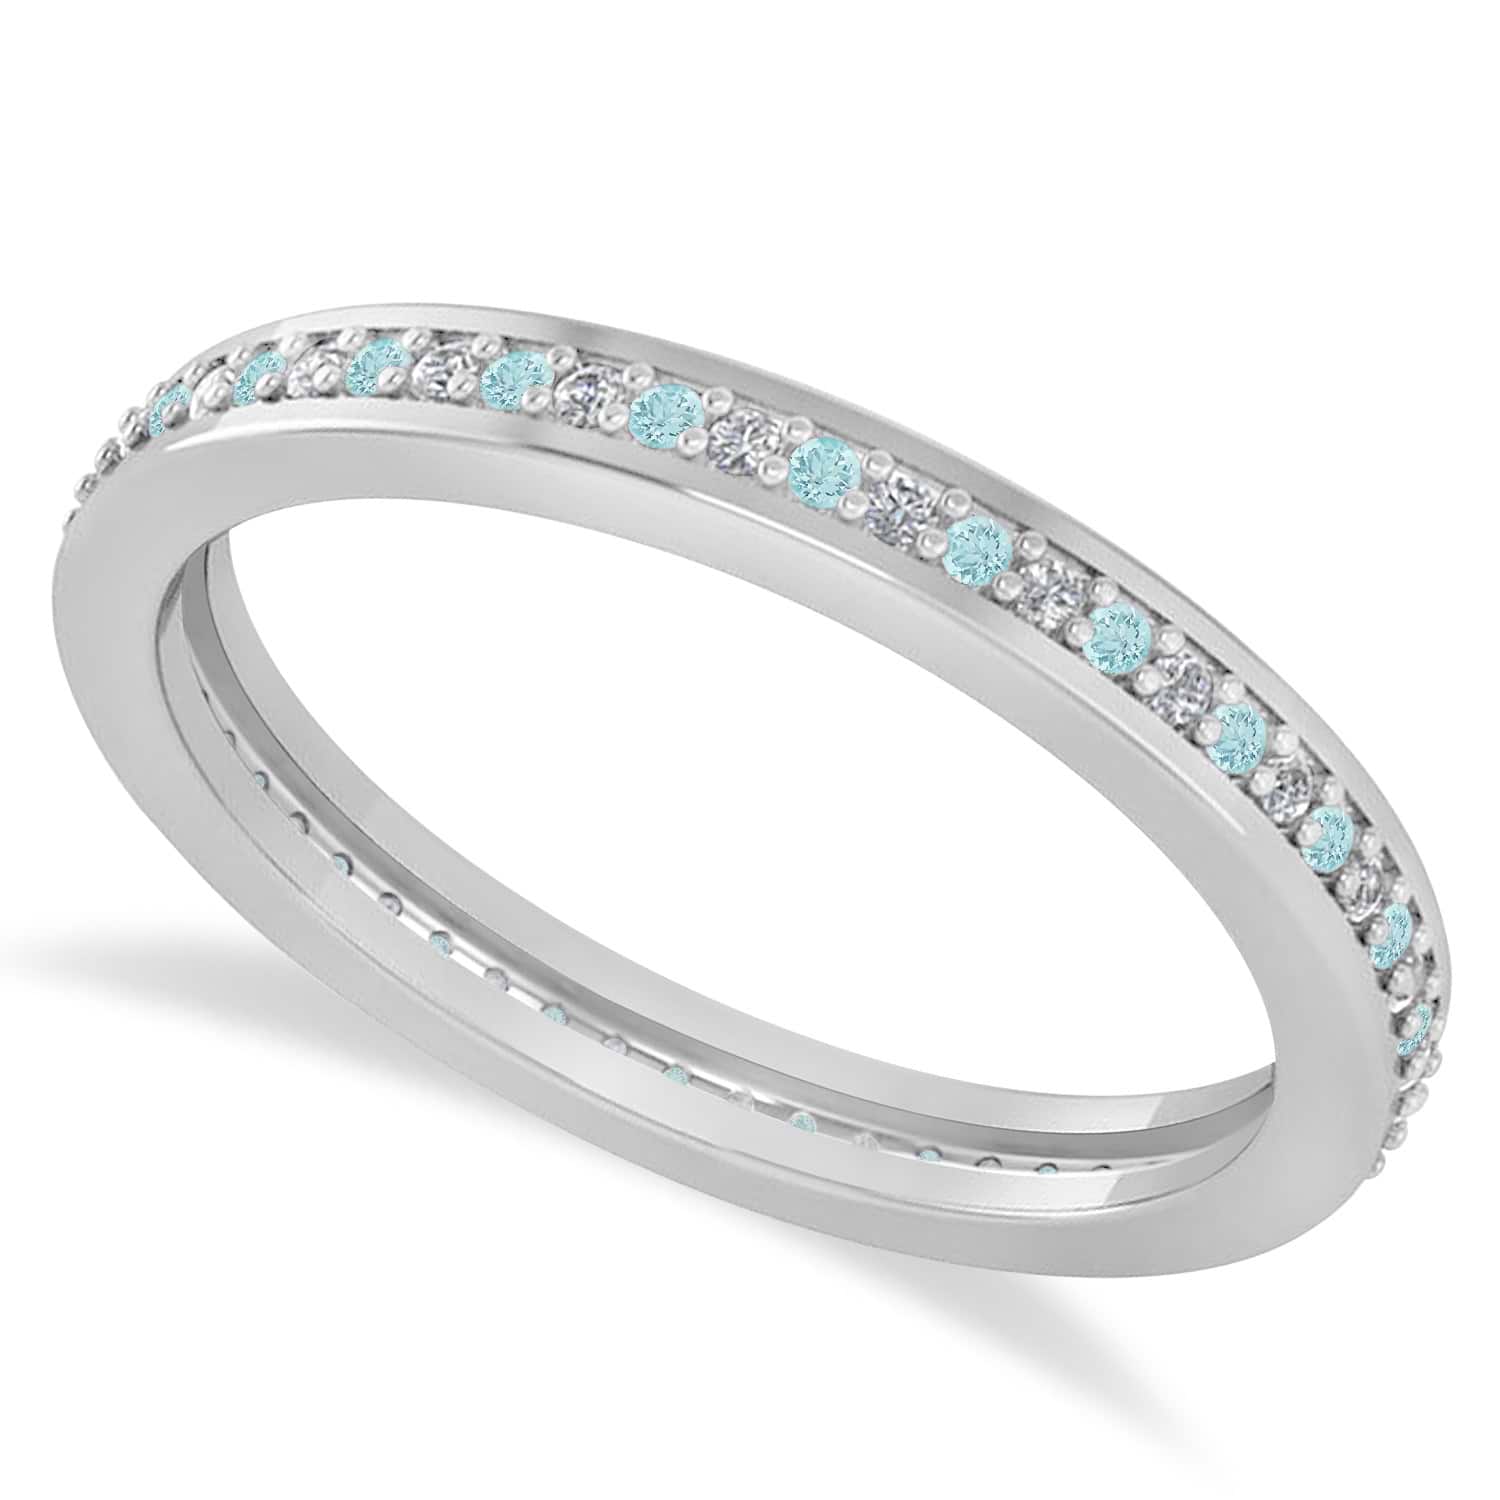 Diamond & Aquamarine Eternity Wedding Band 14k White Gold (0.28ct) size 8, 5.5